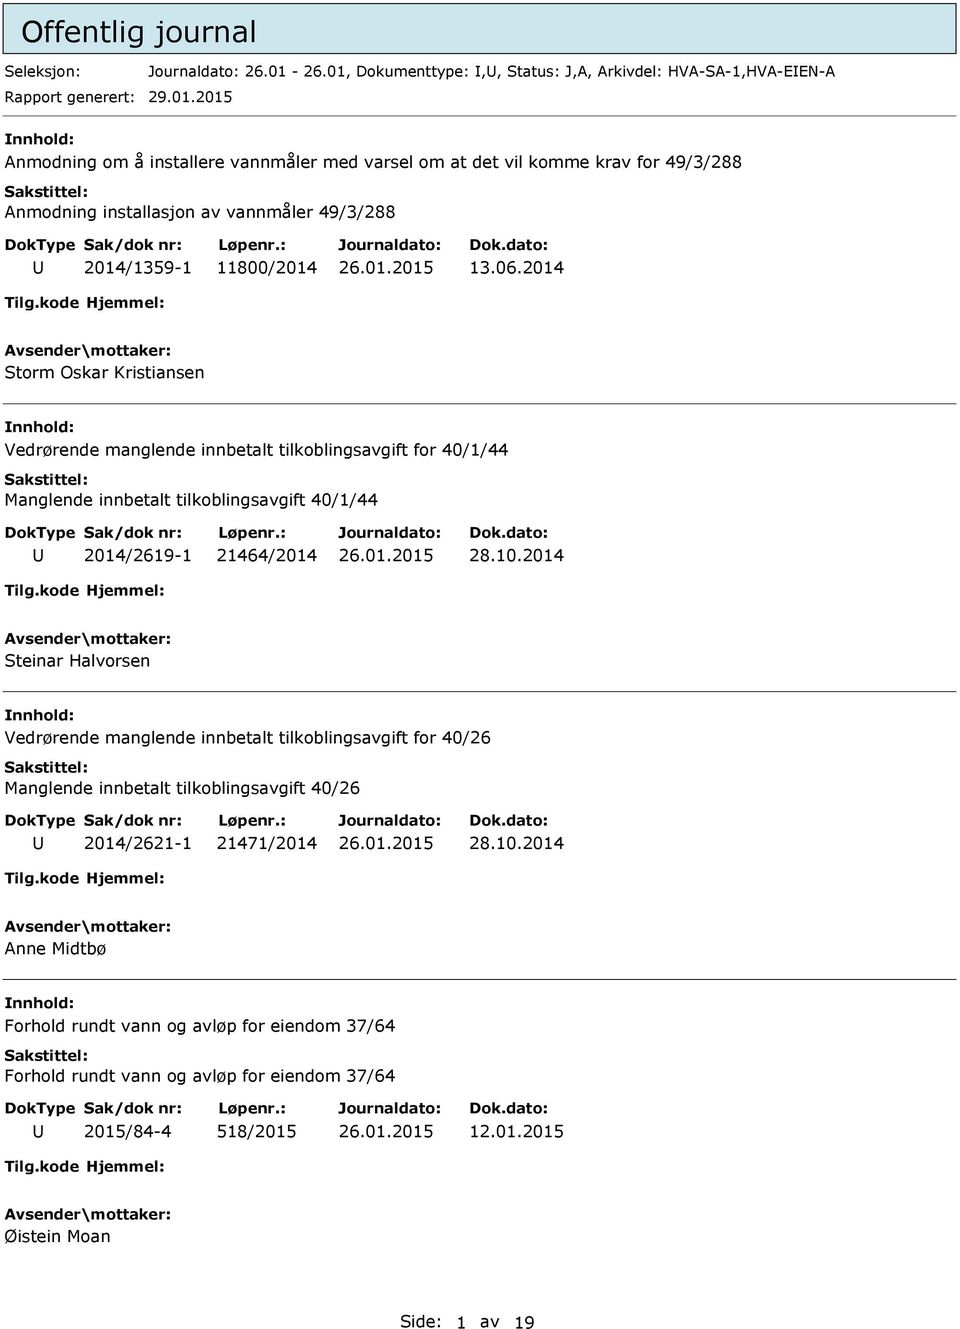 06.2014 Storm Oskar Kristiansen Vedrørende manglende innbetalt tilkoblingsavgift for 40/1/44 Manglende innbetalt tilkoblingsavgift 40/1/44 2014/2619-1 21464/2014 28.10.